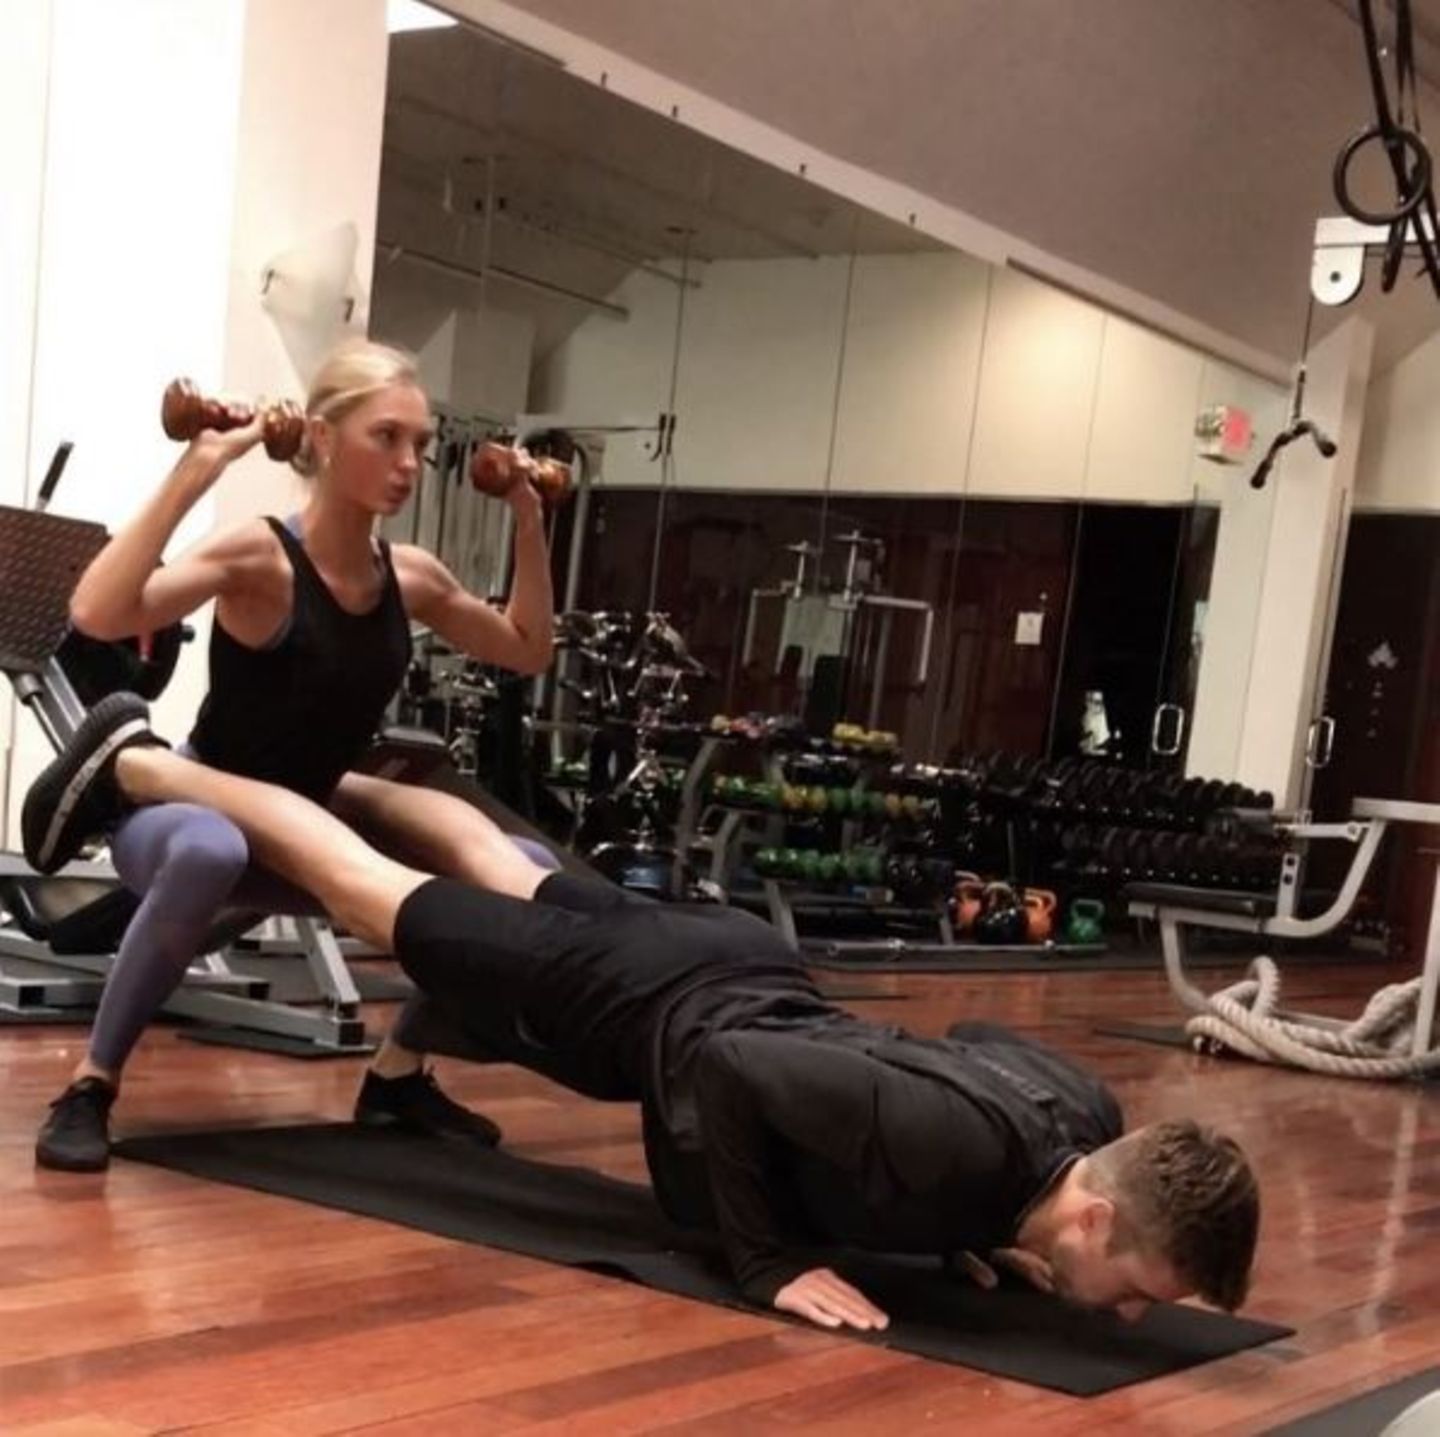 Romee Strijd trainiert nicht etwa mit einem Personal Coach, sondern mit ihrem Freund Laurens van Leeuwen. Dafür haben sie ein Pärchen-Programm, bei dem sie vor allem auf Gewichte zurückgreifen und ihre eigene Körperspannung schulen.